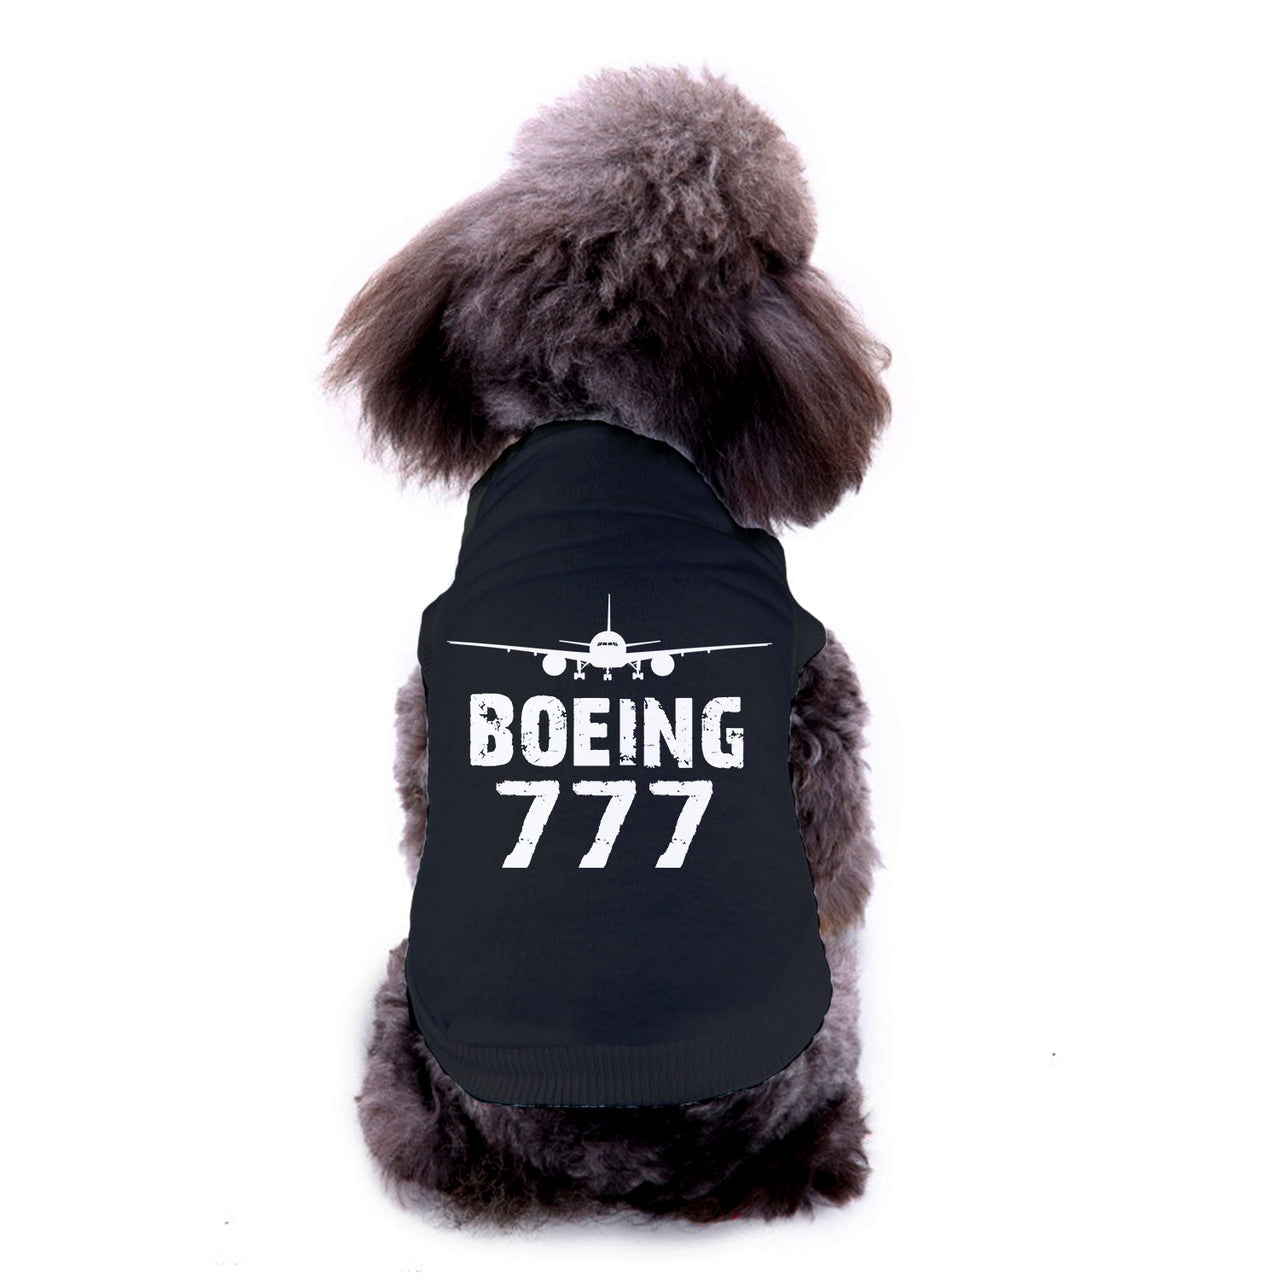 Boeing 777 & Plane Designed Dog Pet Vests